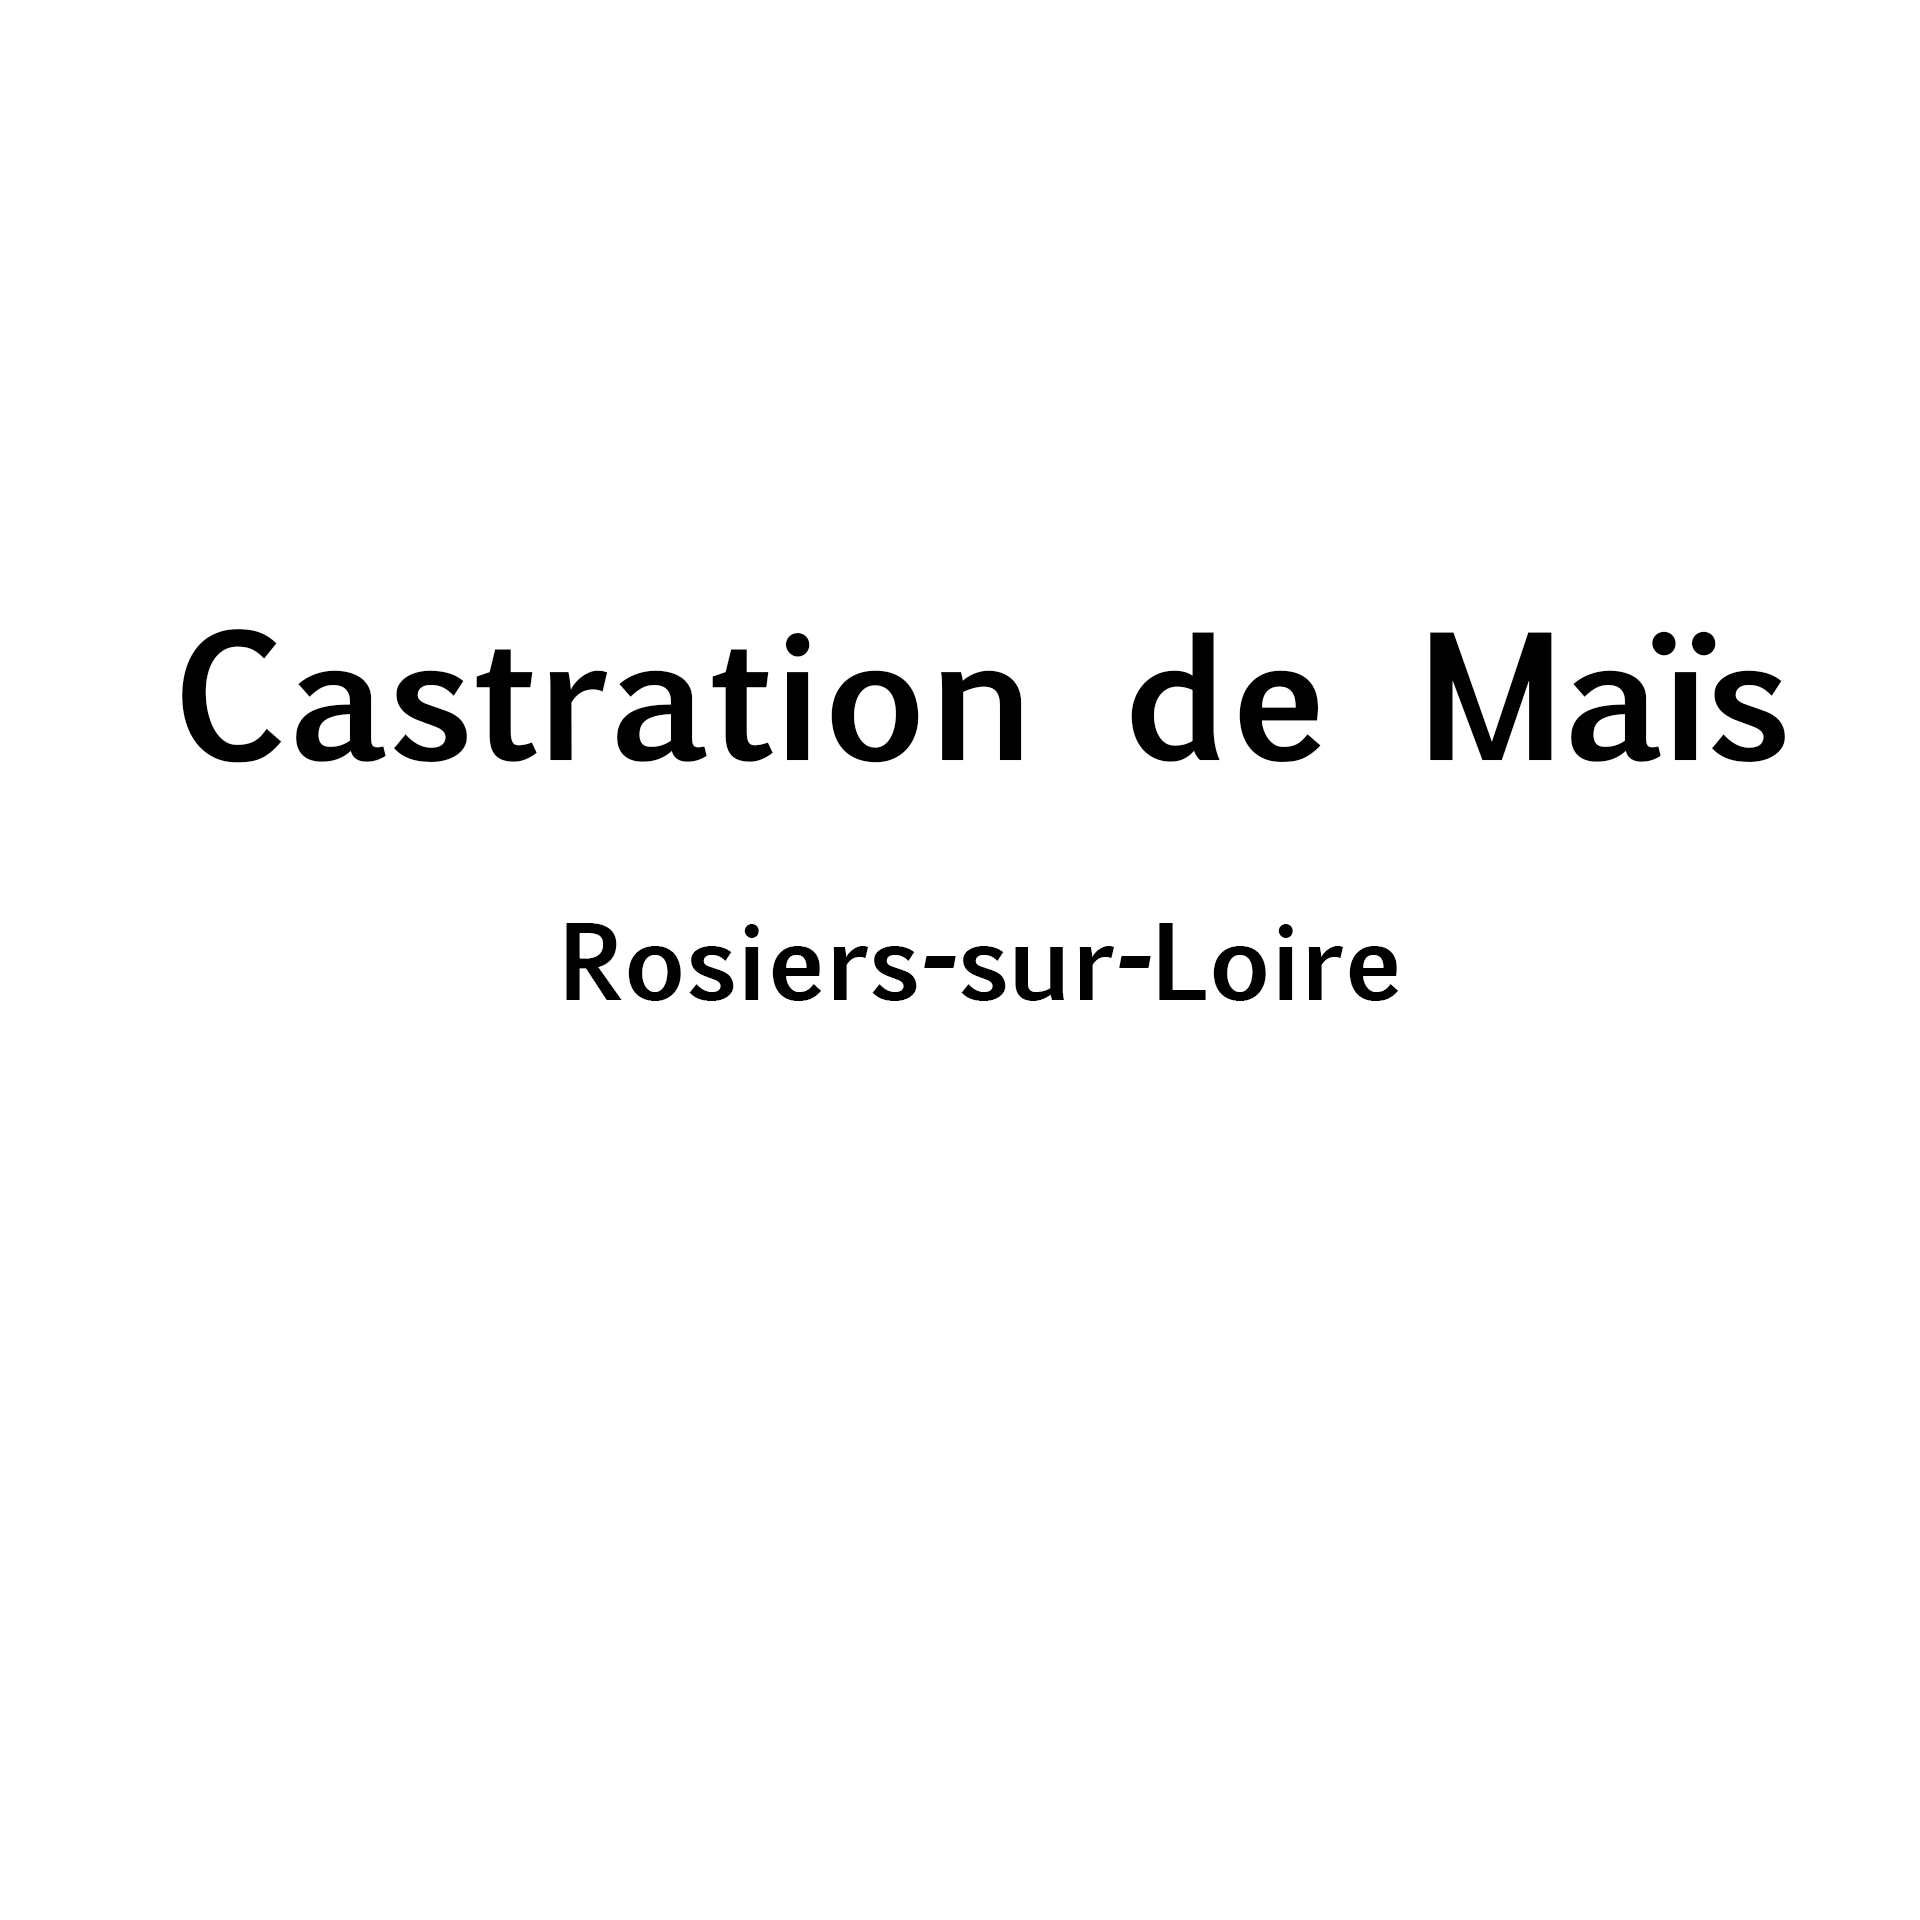 Castration de Maïs